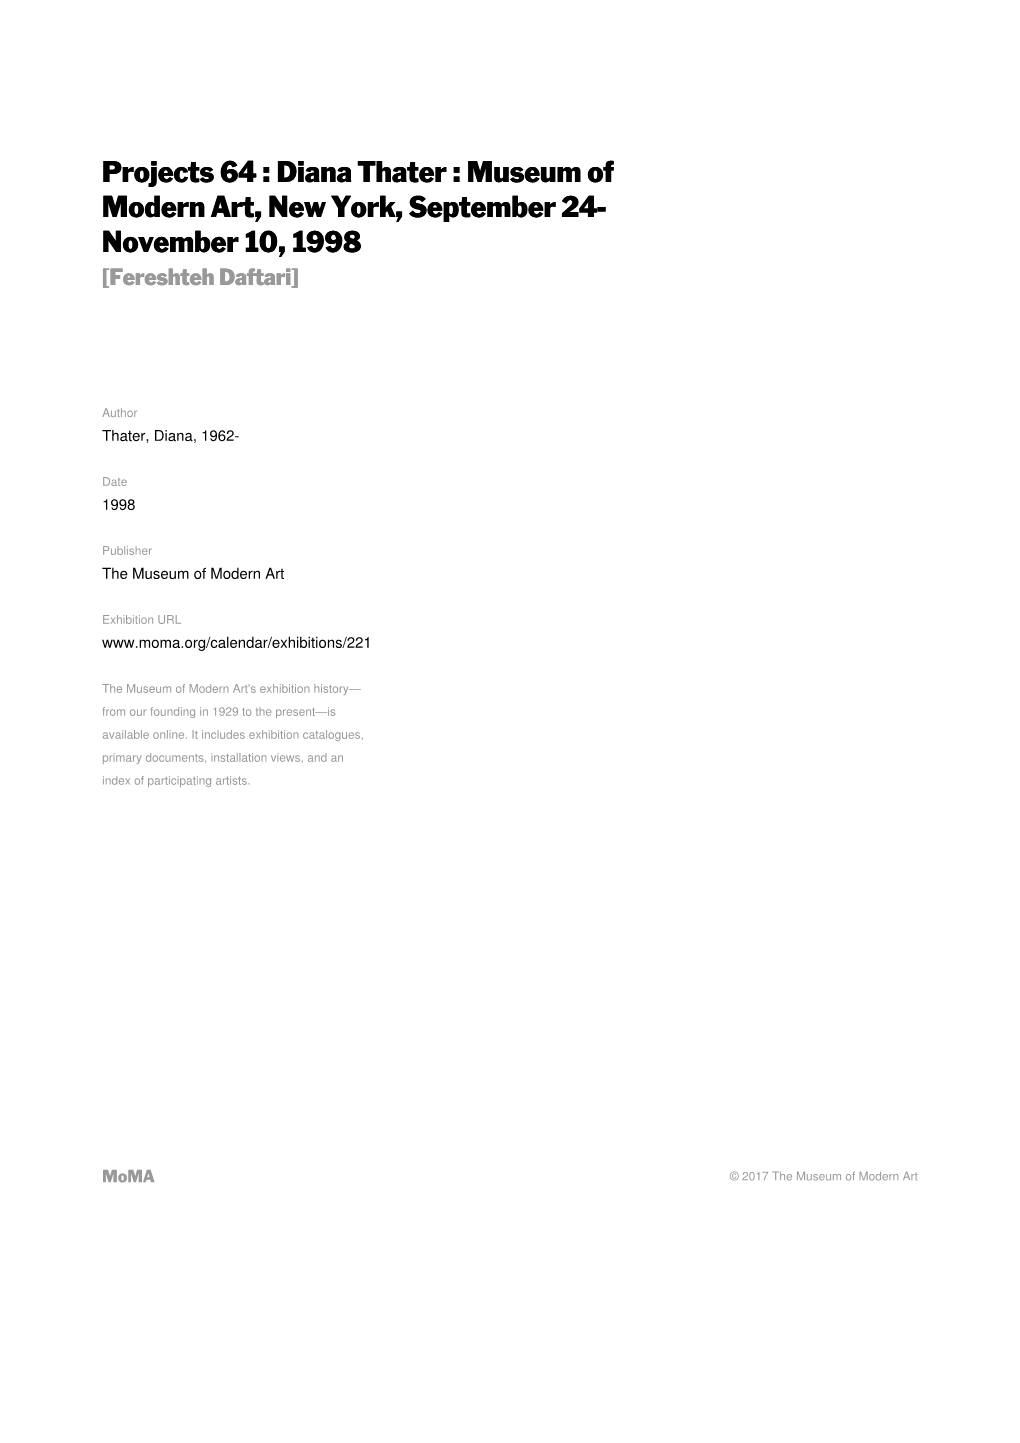 Diana Thater : Museum of Modern Art, New York, September 24- November 10, 1998 [Fereshteh Daftari]